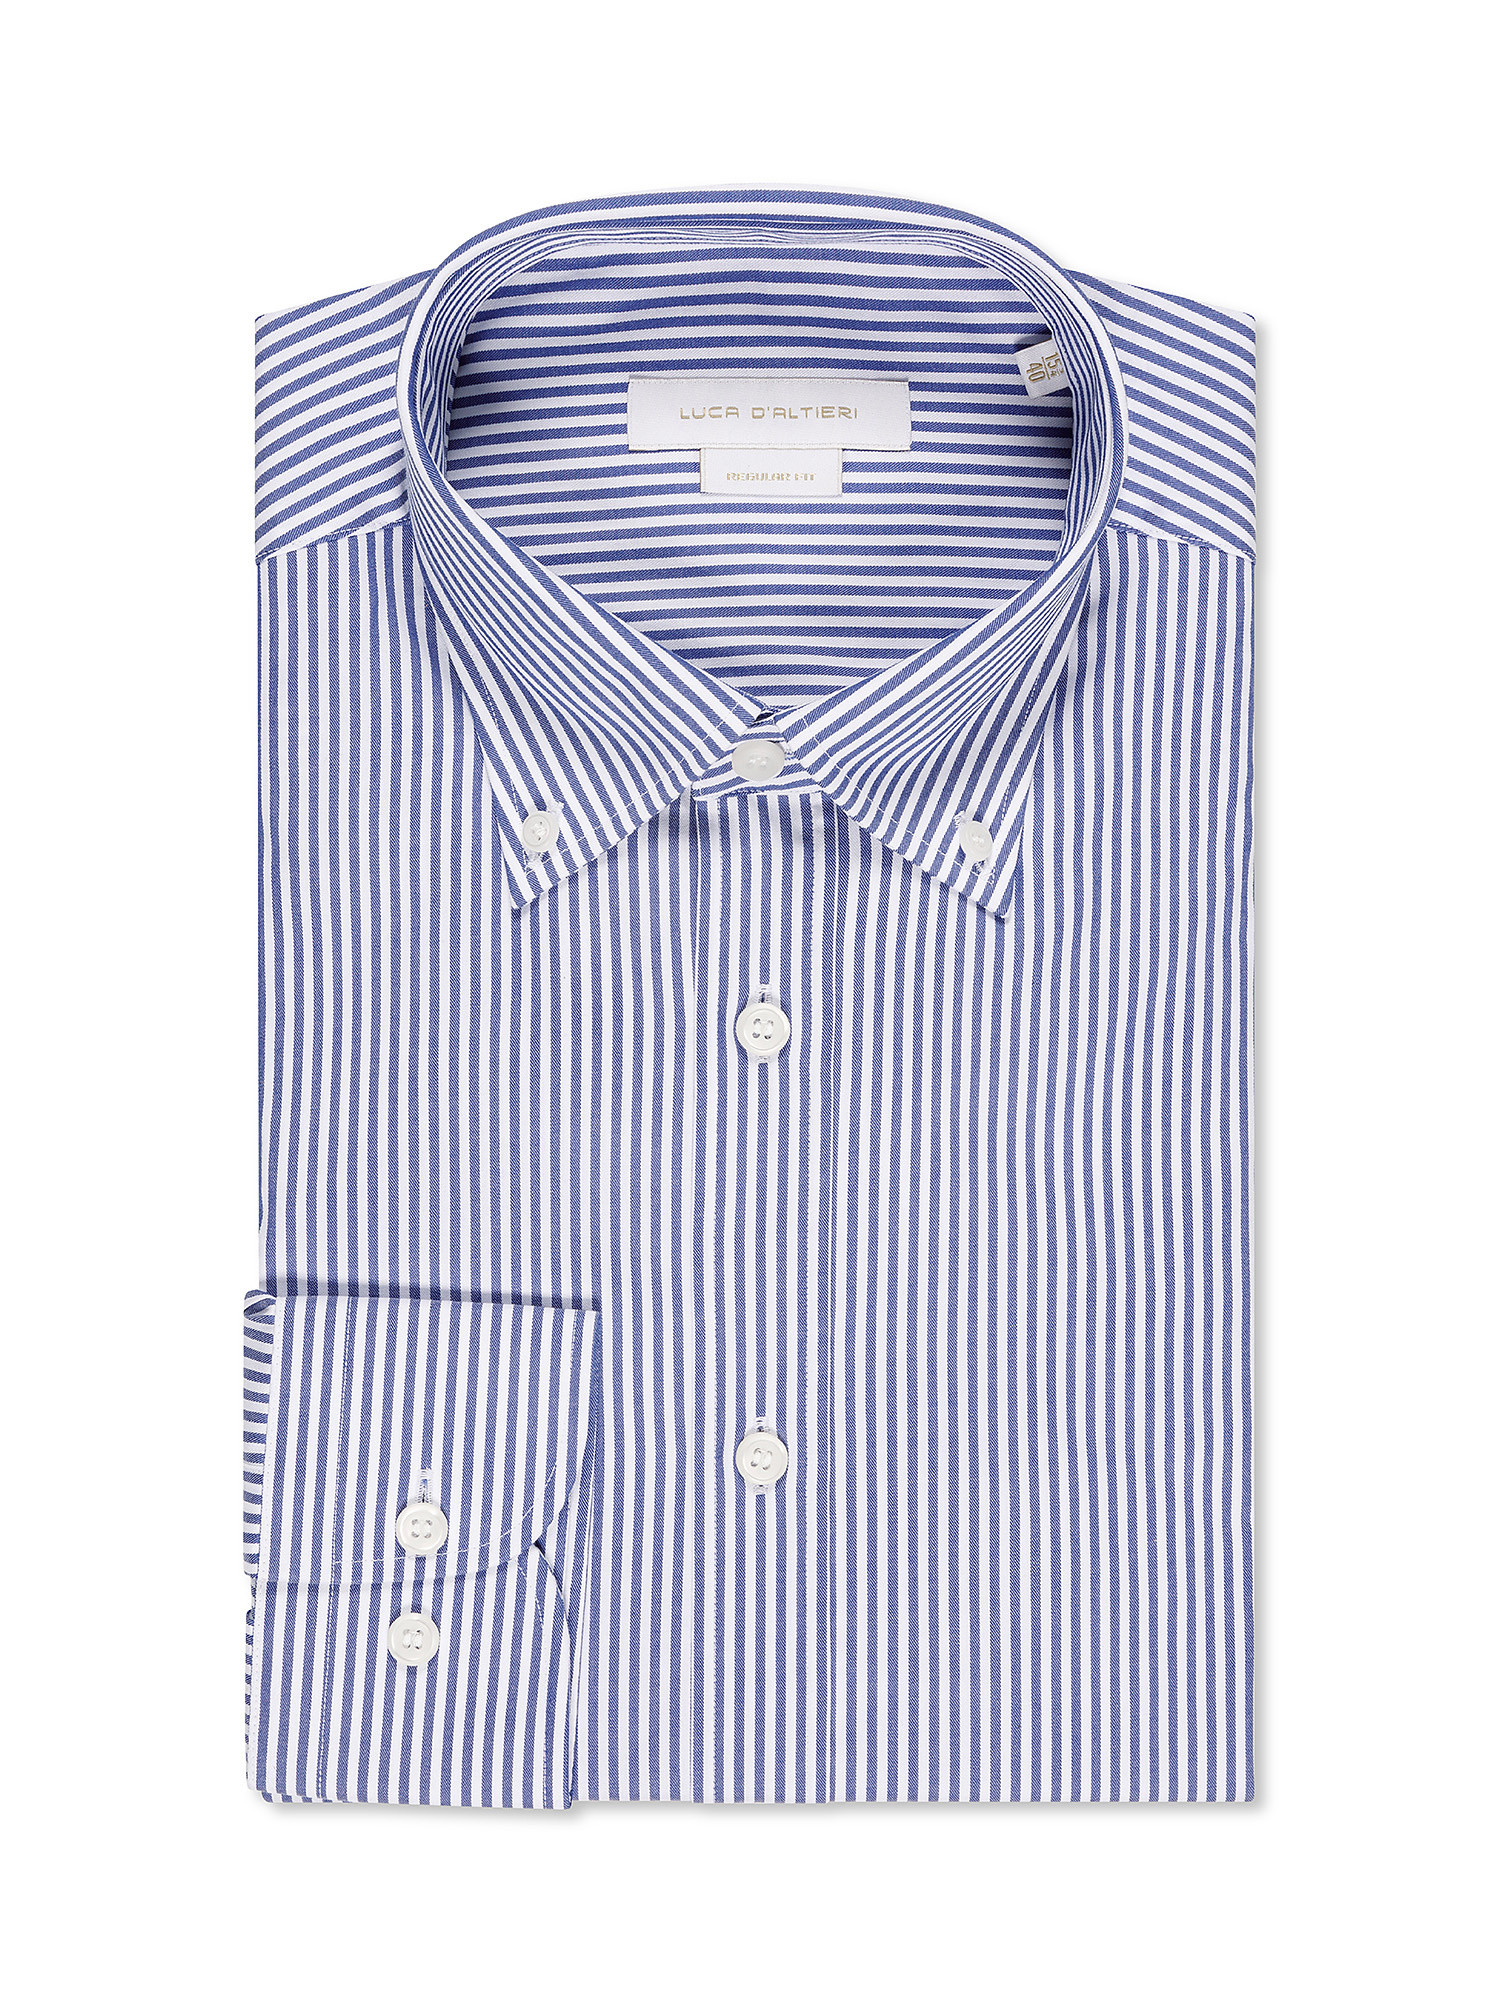 Рубашка стандартного кроя из чистого хлопка. Luca D'Altieri, синий рубашка однотонная с длинными рукавами и костюмным воротником